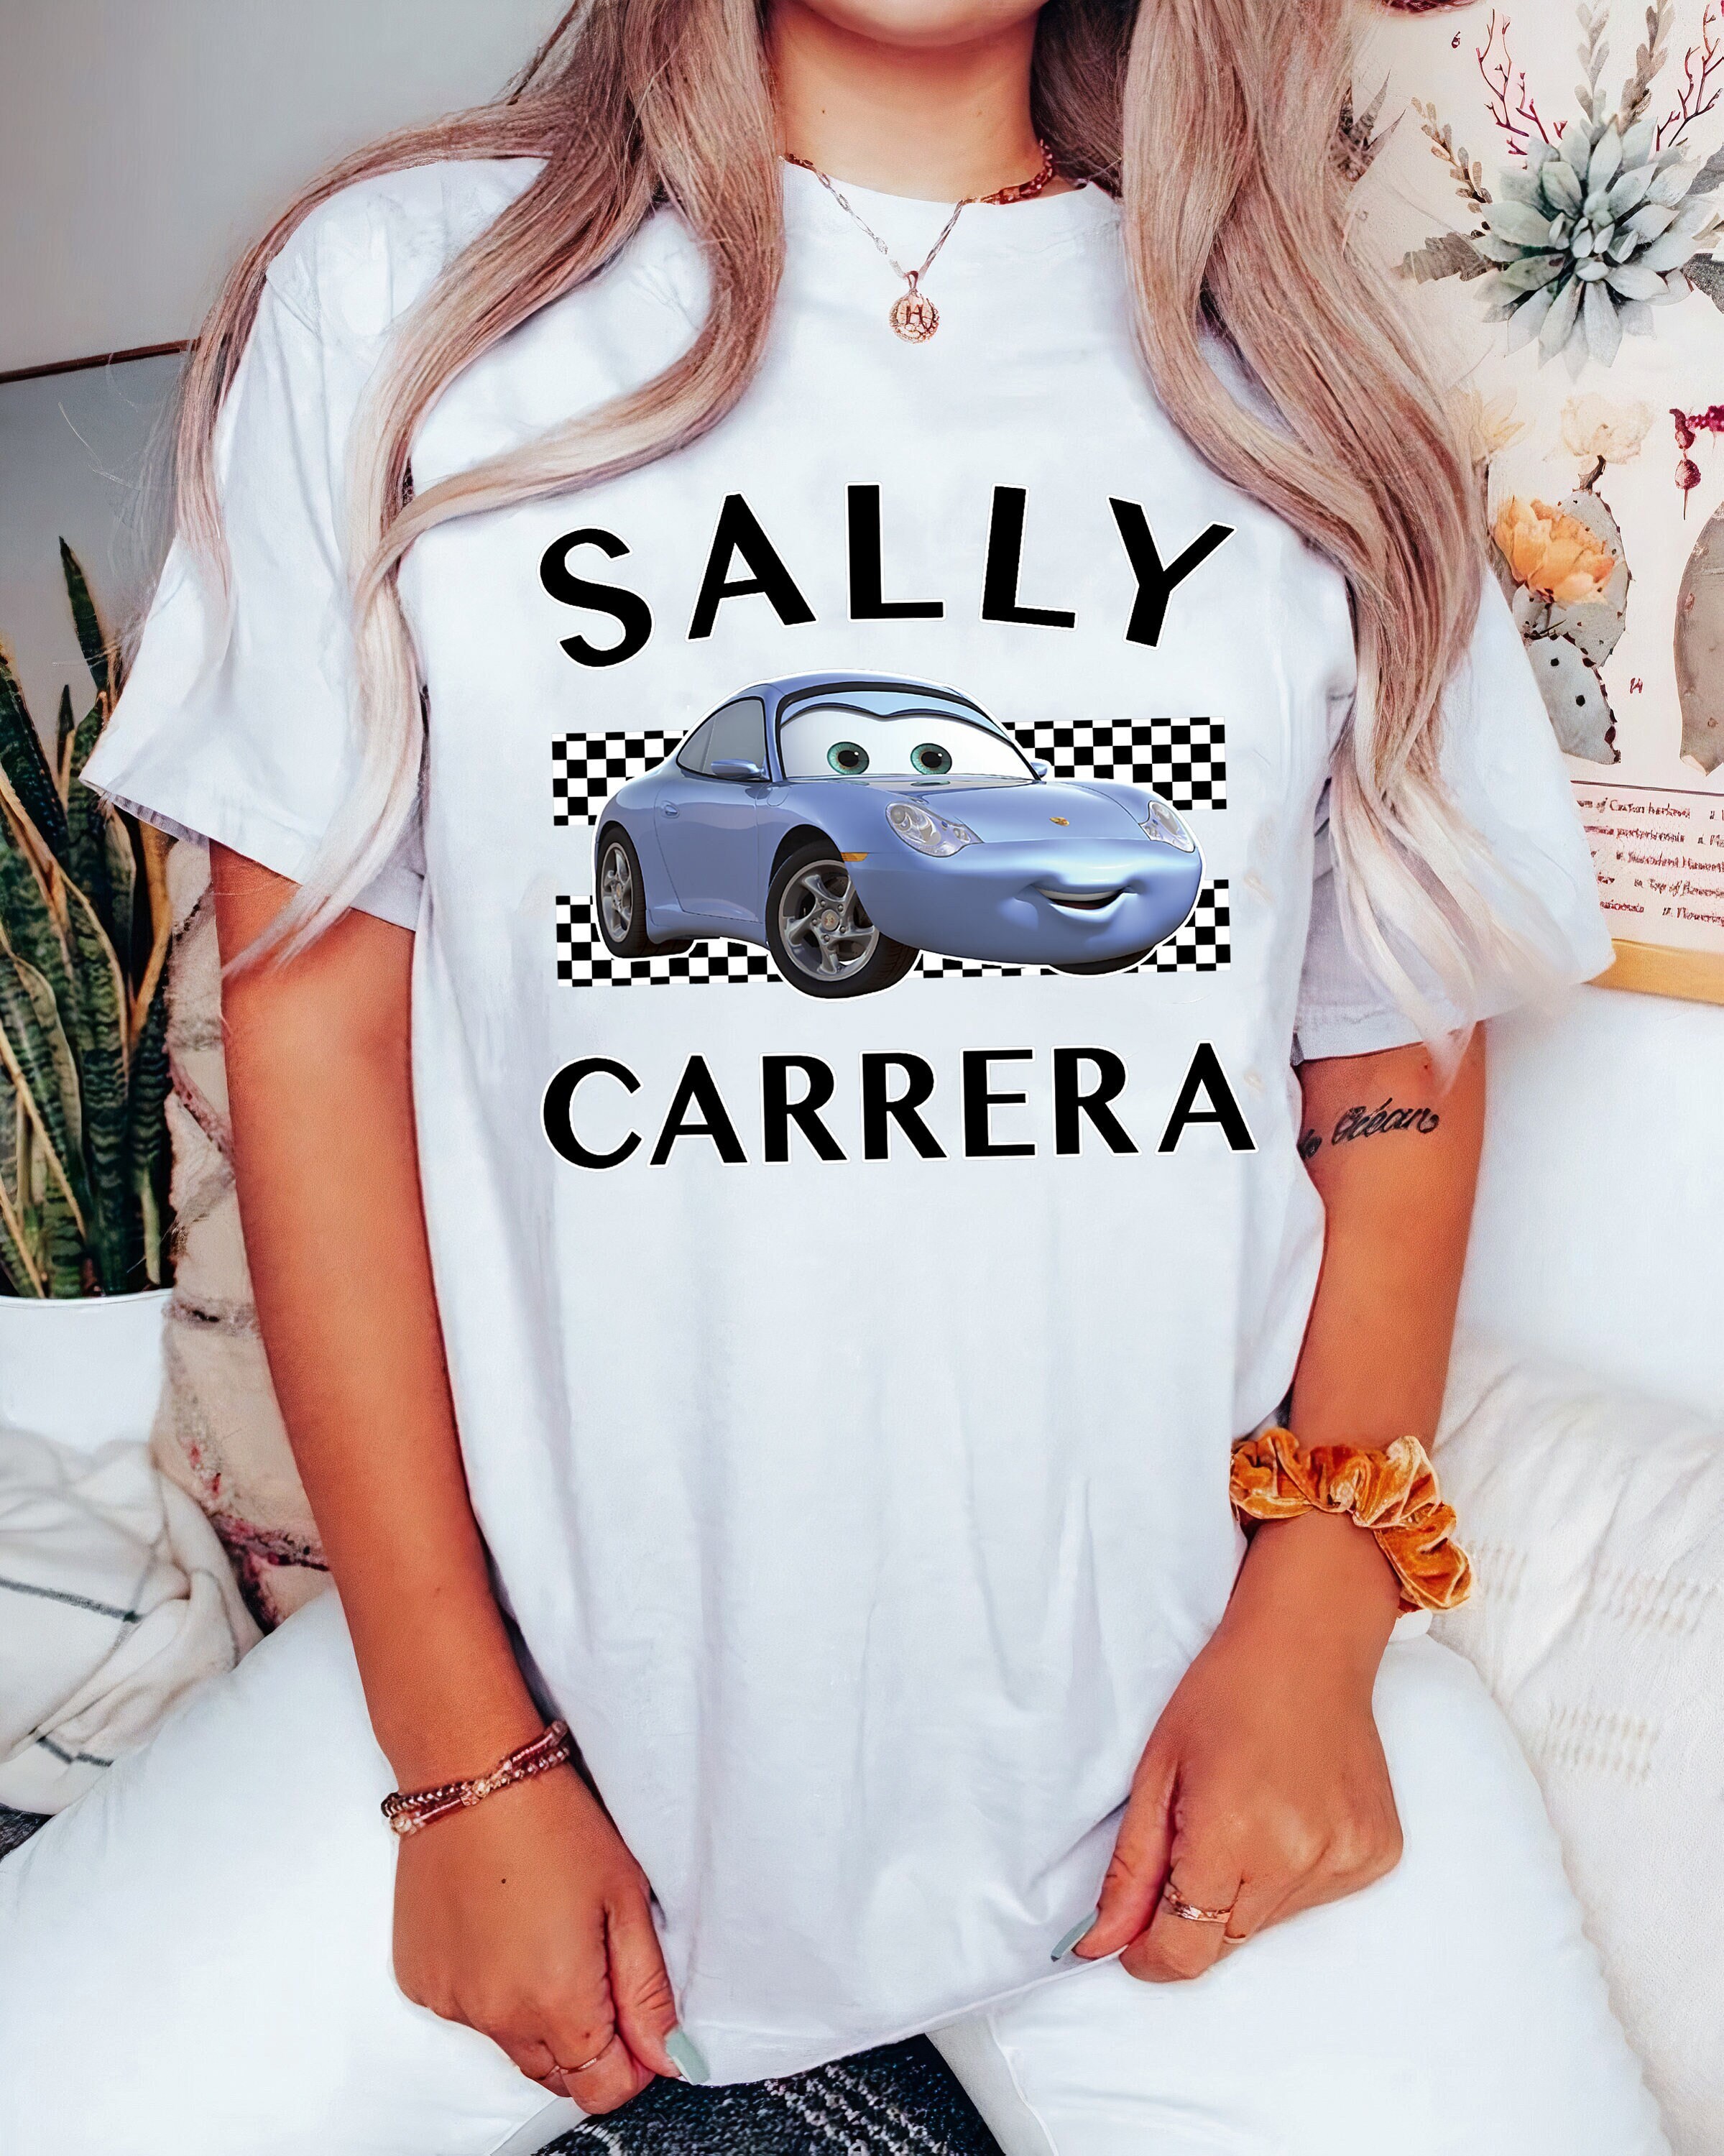 Sally Carrera - Etsy UK